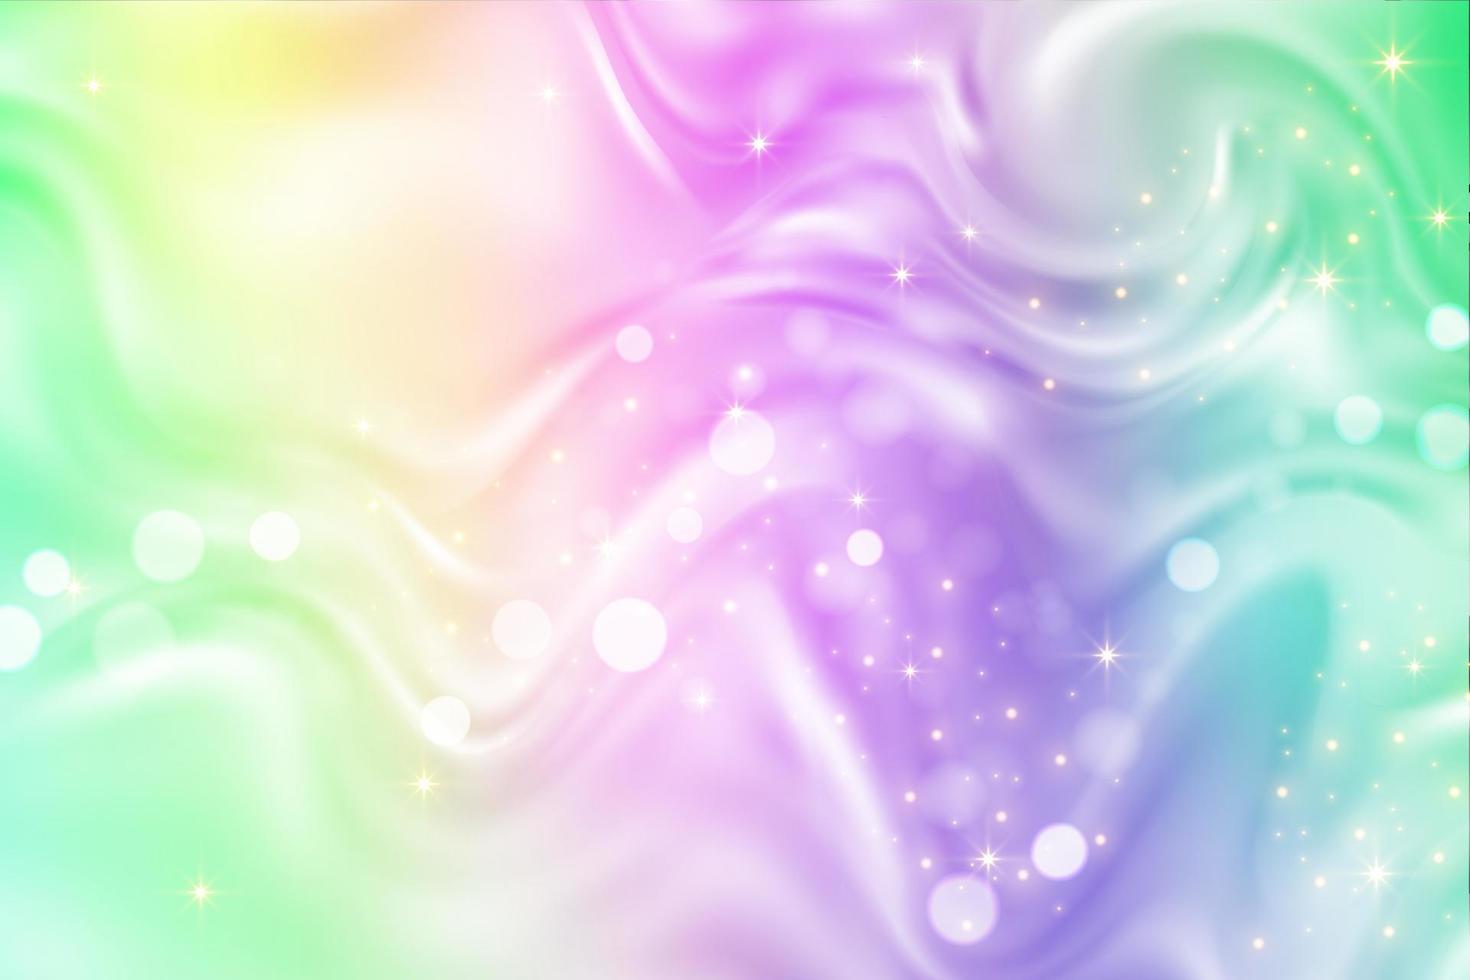 Regenbogen-Einhorn-Hintergrund. pastellfarbener Farbverlauf mit Glitzer und Bokeh. Magic Fluid Galaxy Space und Sterne. Vektor abstraktes Muster.